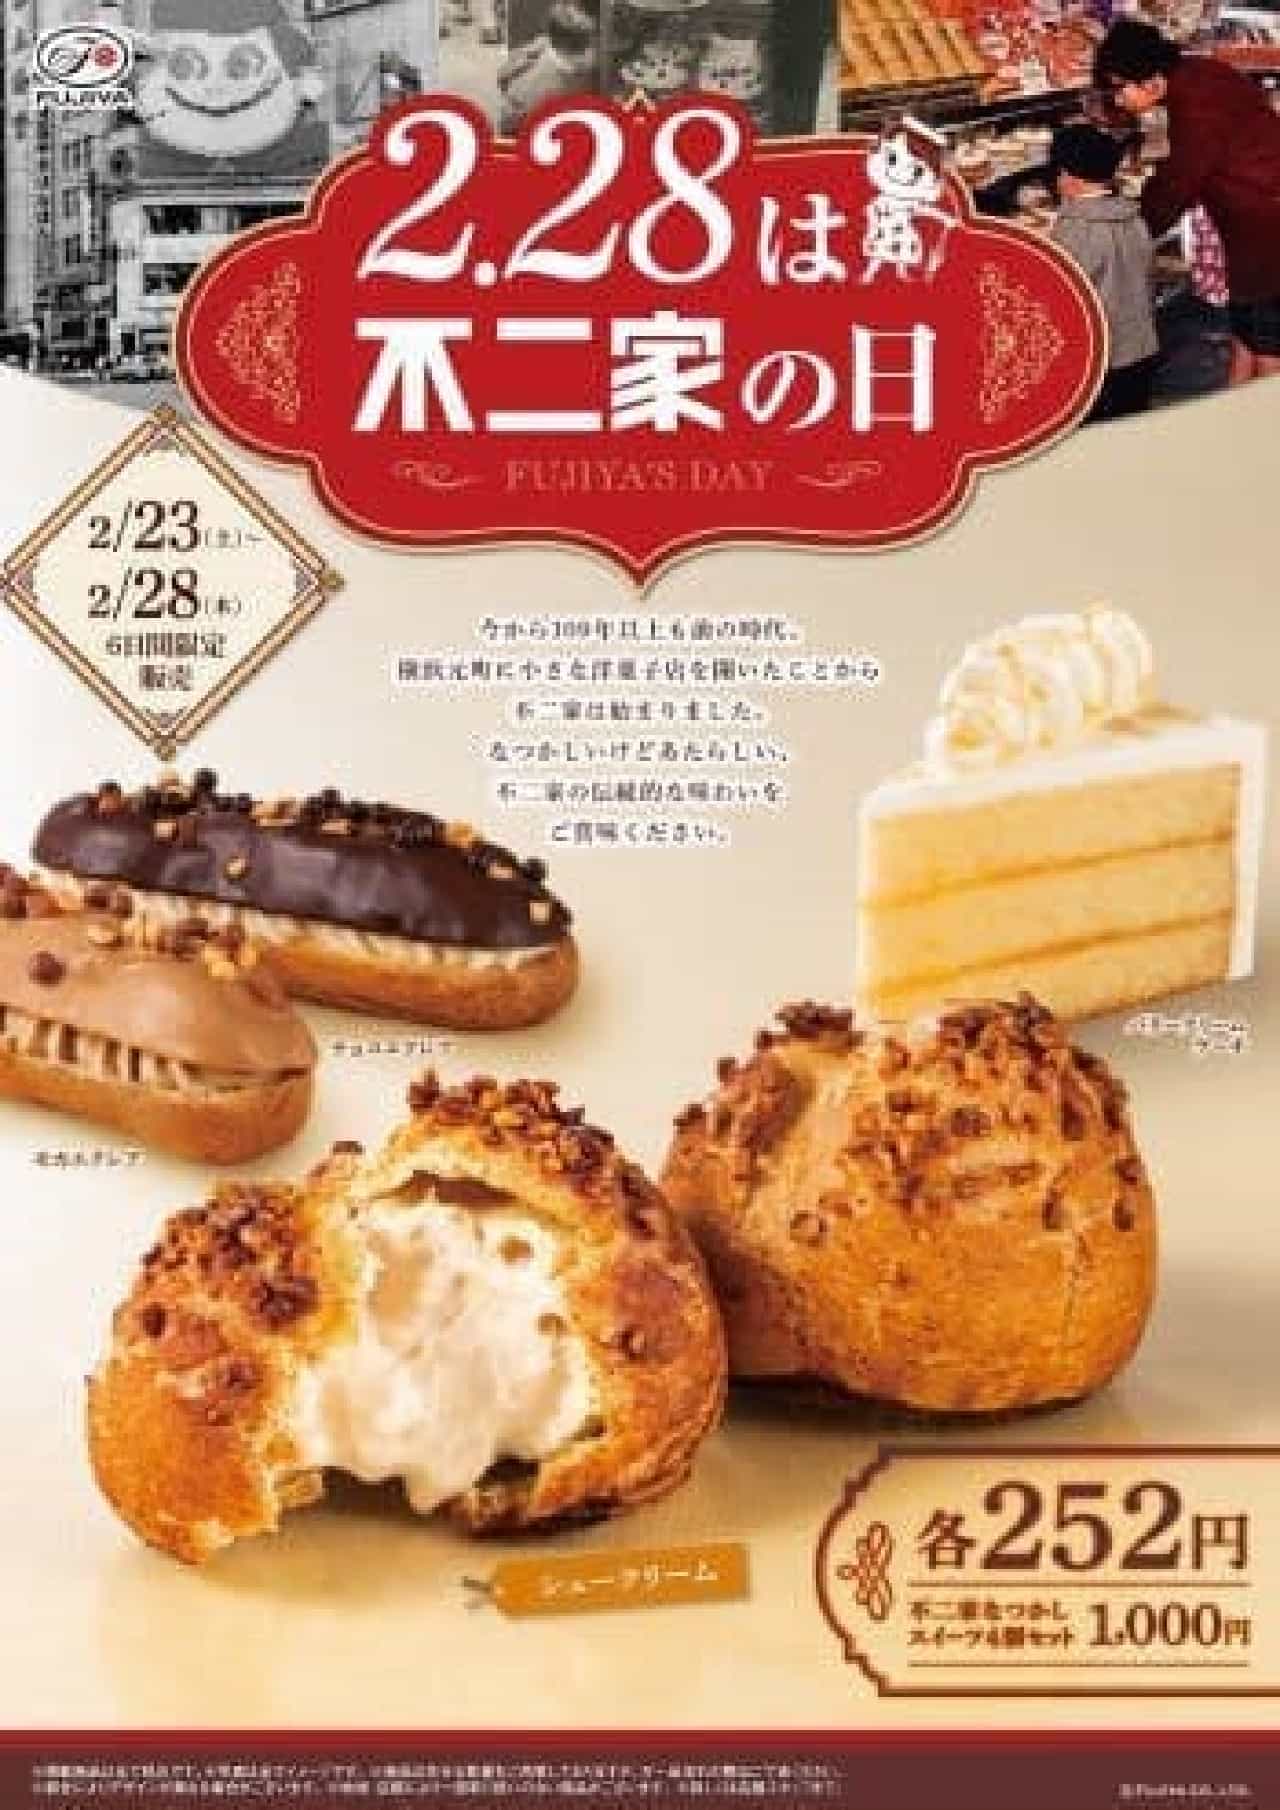 Fujiya pastry shop "Fujiya Day"